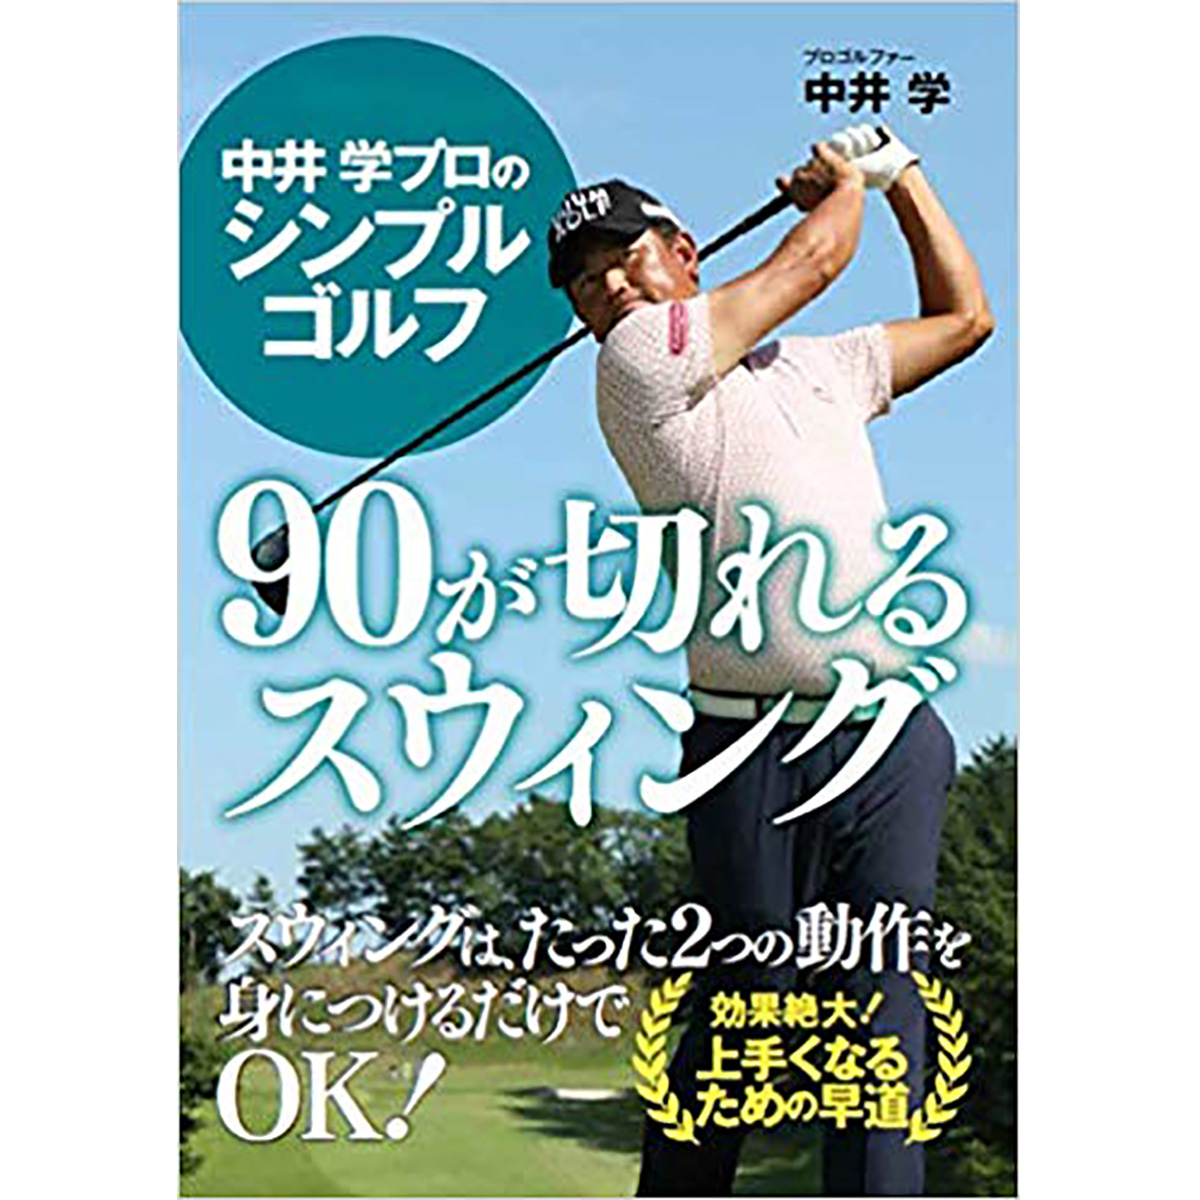  中井 学プロのシンプルゴルフ 90が切れるスウィング 